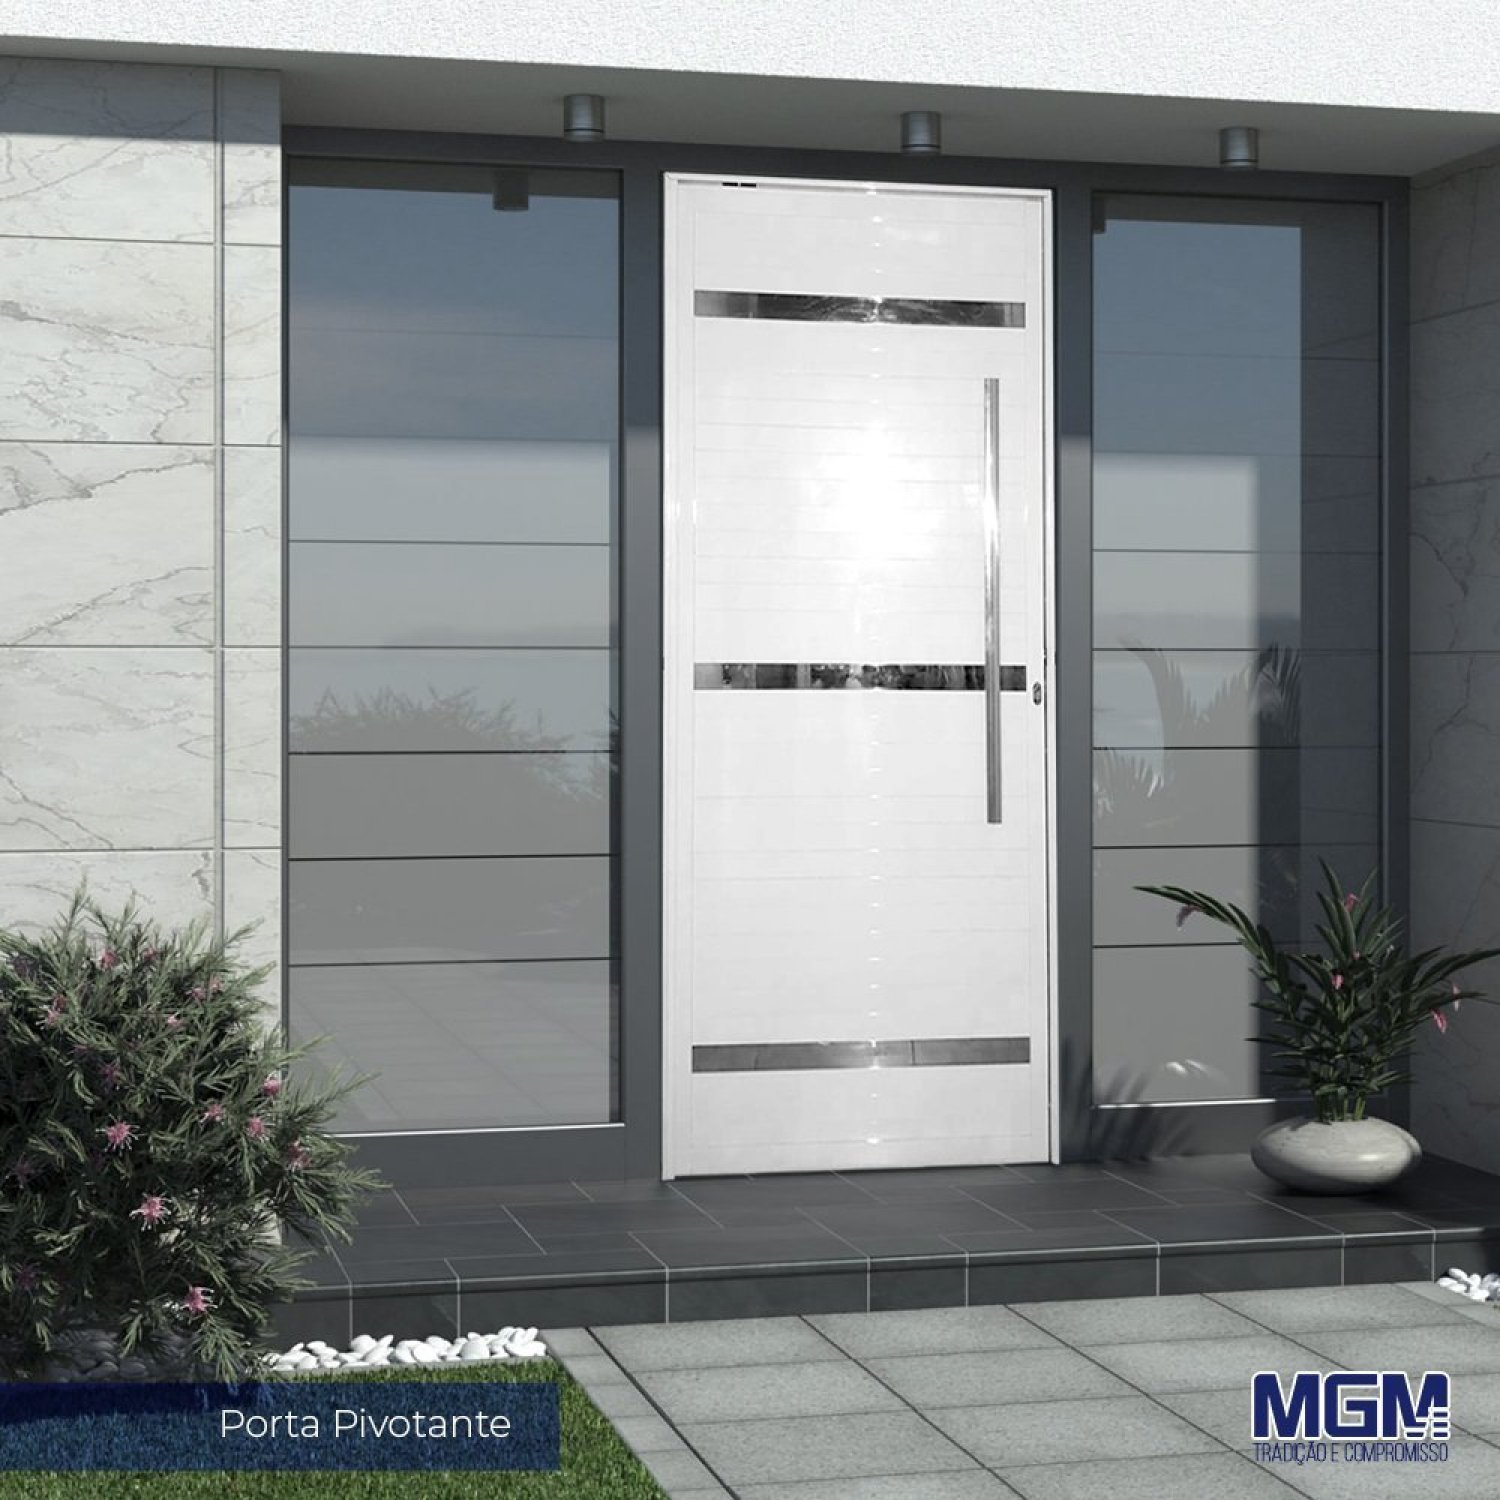 Porta de Aluminio Pivotante Branca com Frisos 220x110 MGM